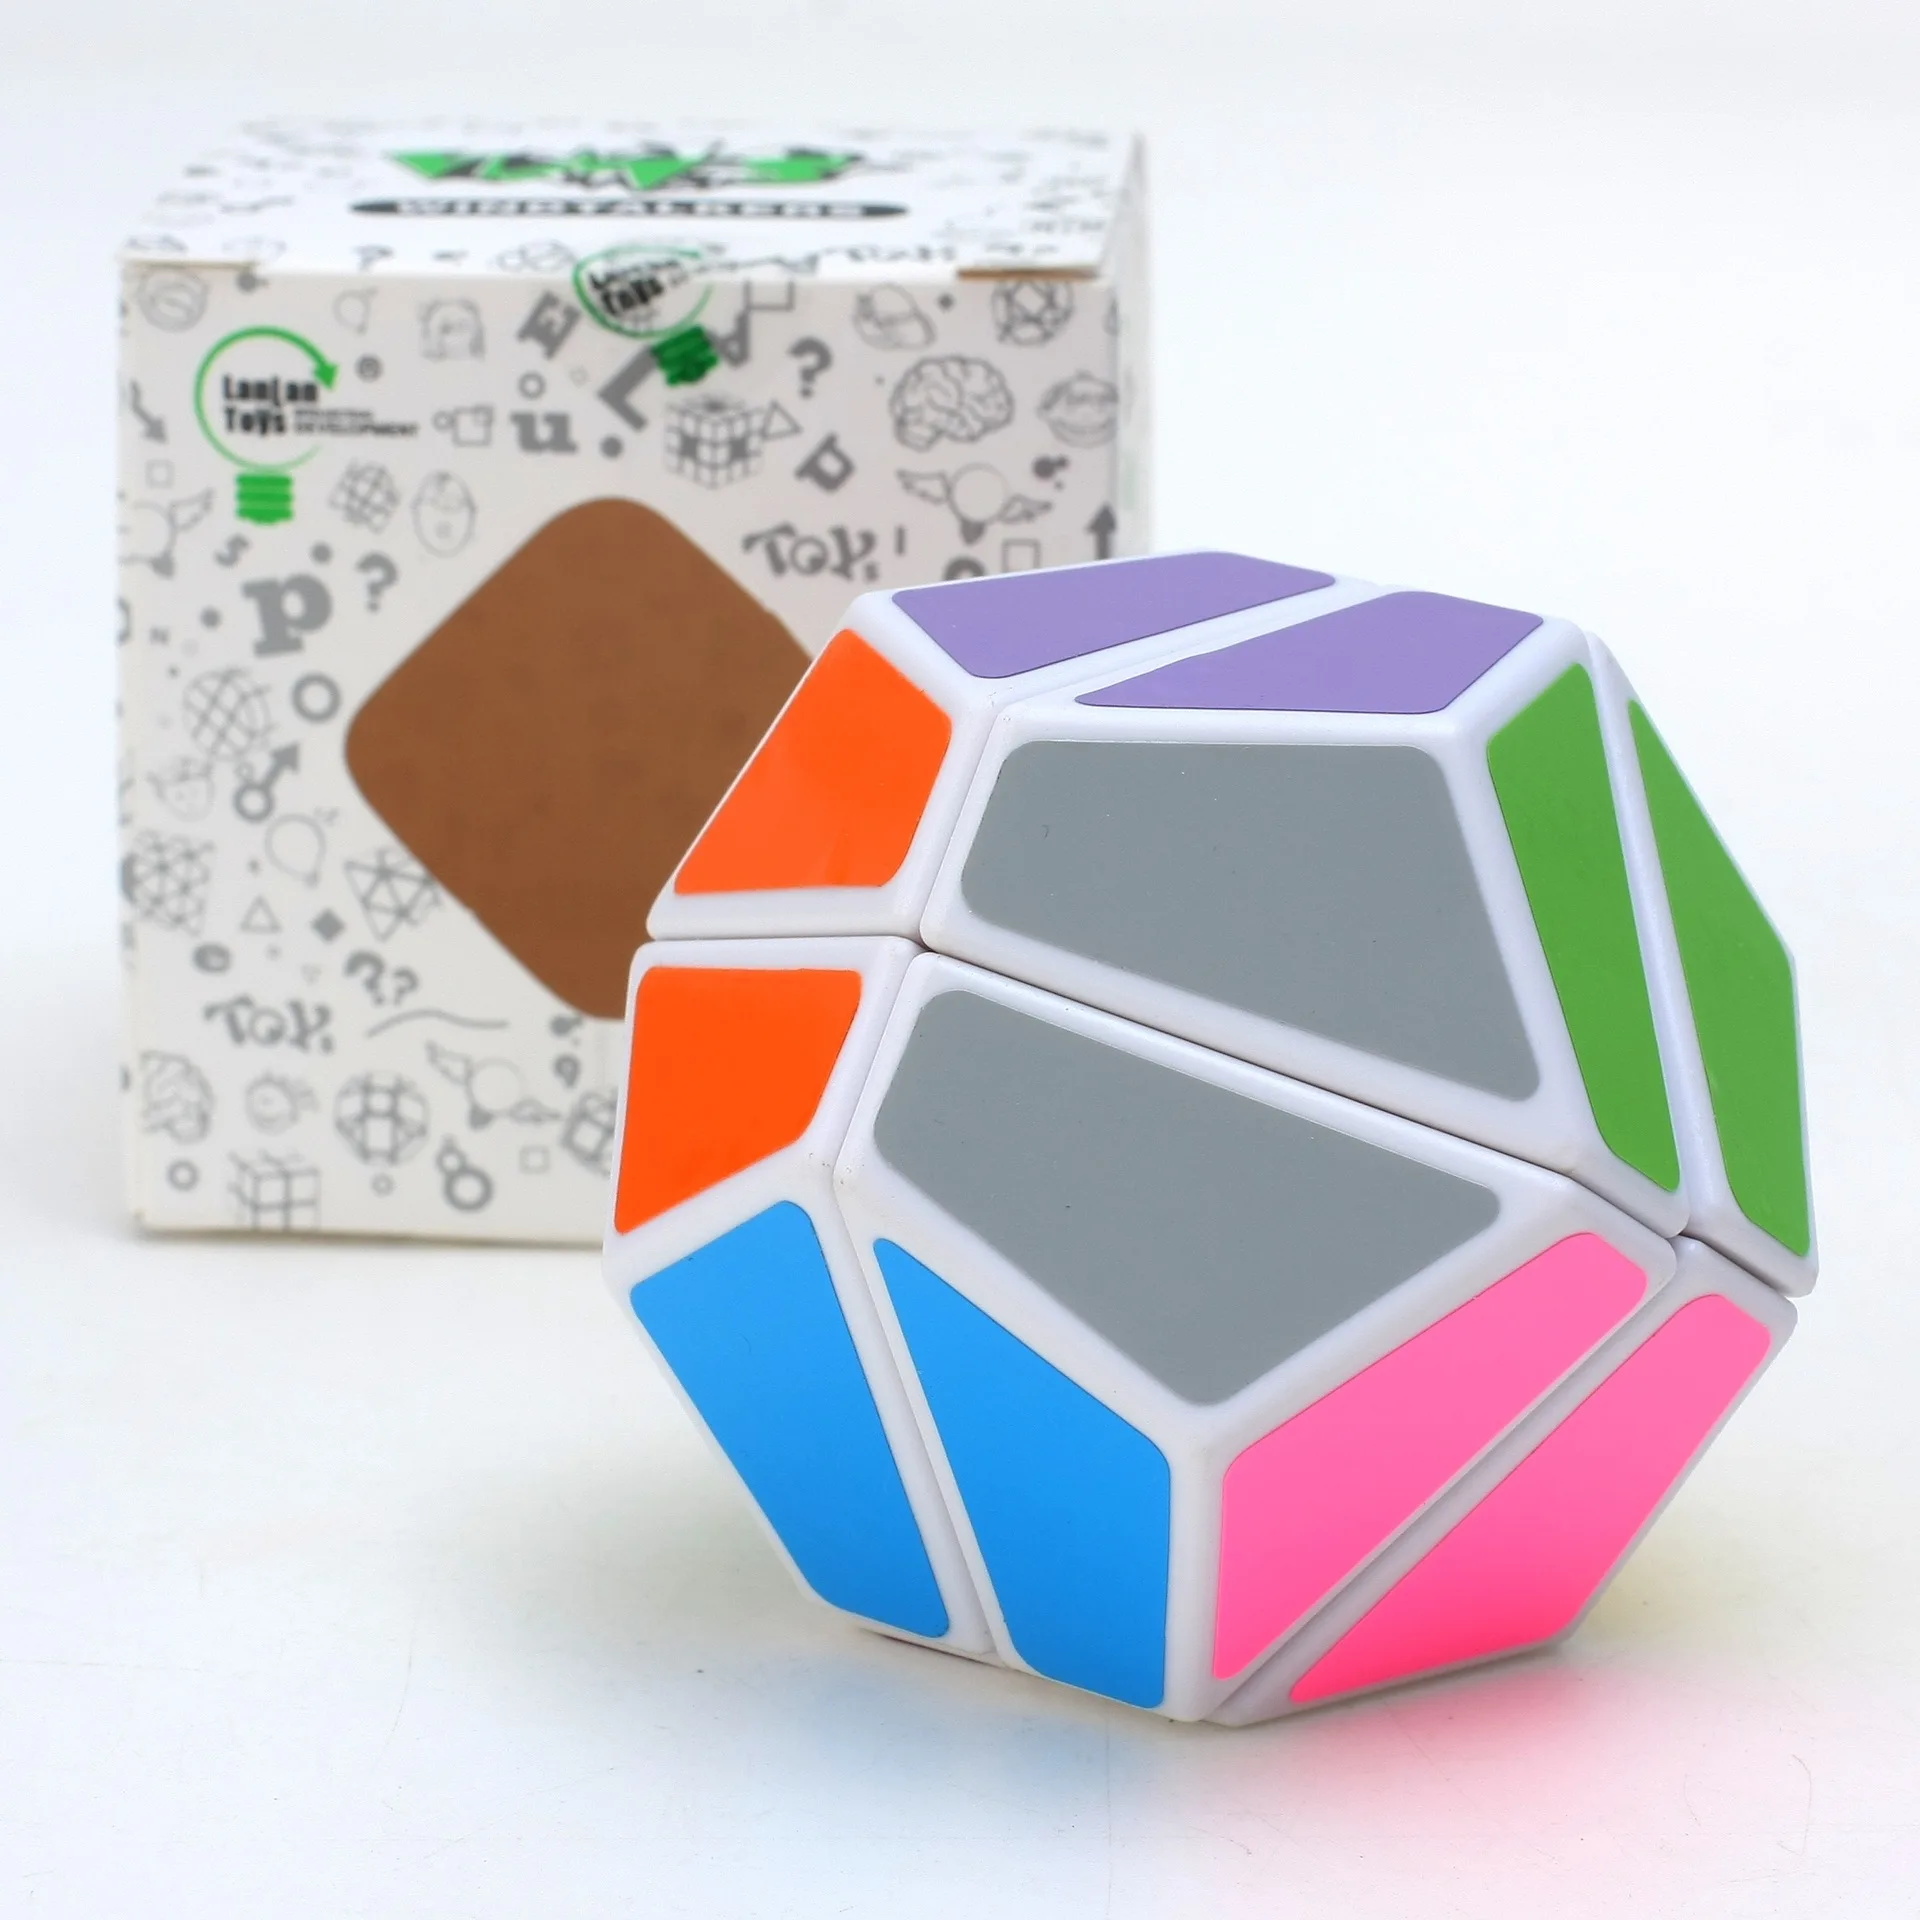 Lanlan LL 2x2x2 волшебный куб головоломка на скорость игры часы-кольцо с крышкой игрушки для детей подарок на день рождения - Цвет: White